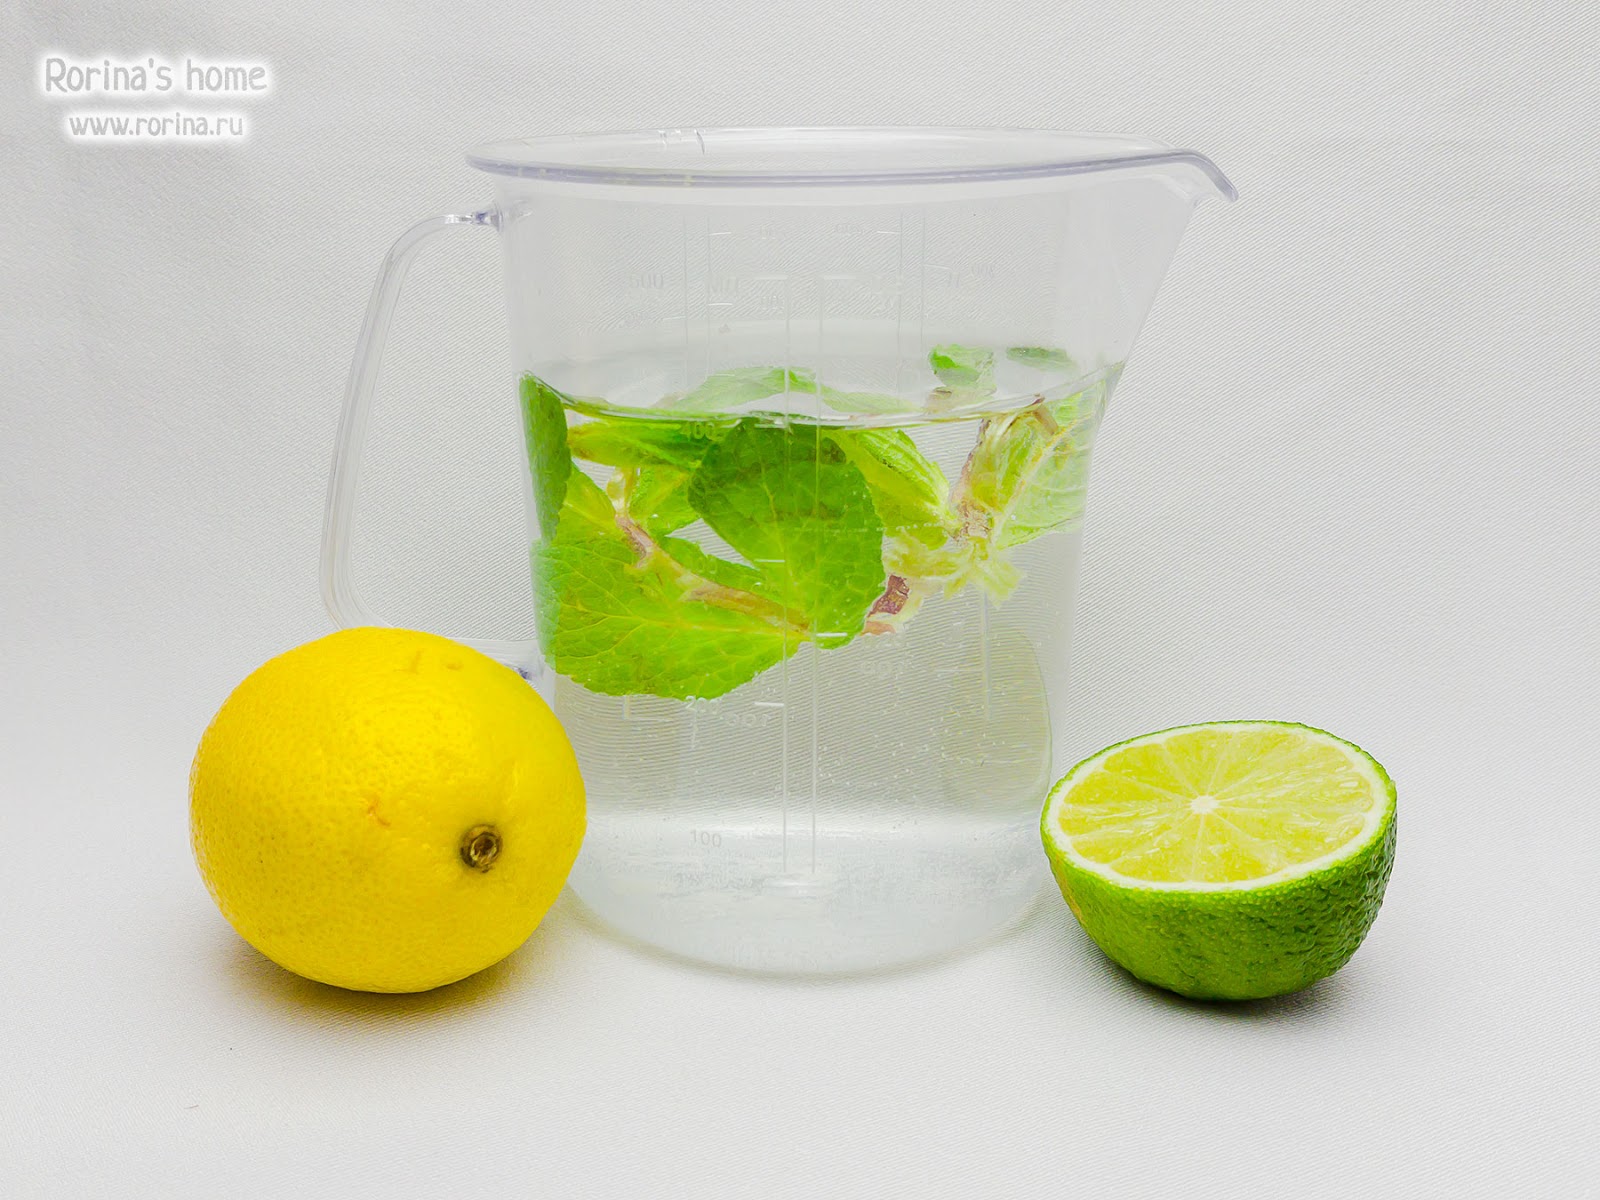 Чиа с водой и лимоном. Вода с чиа и лимоном пропорции. Напиток с чиа. Вода с чиа и лимоном рецепт. Вода чиа лимон сколько можно пить.